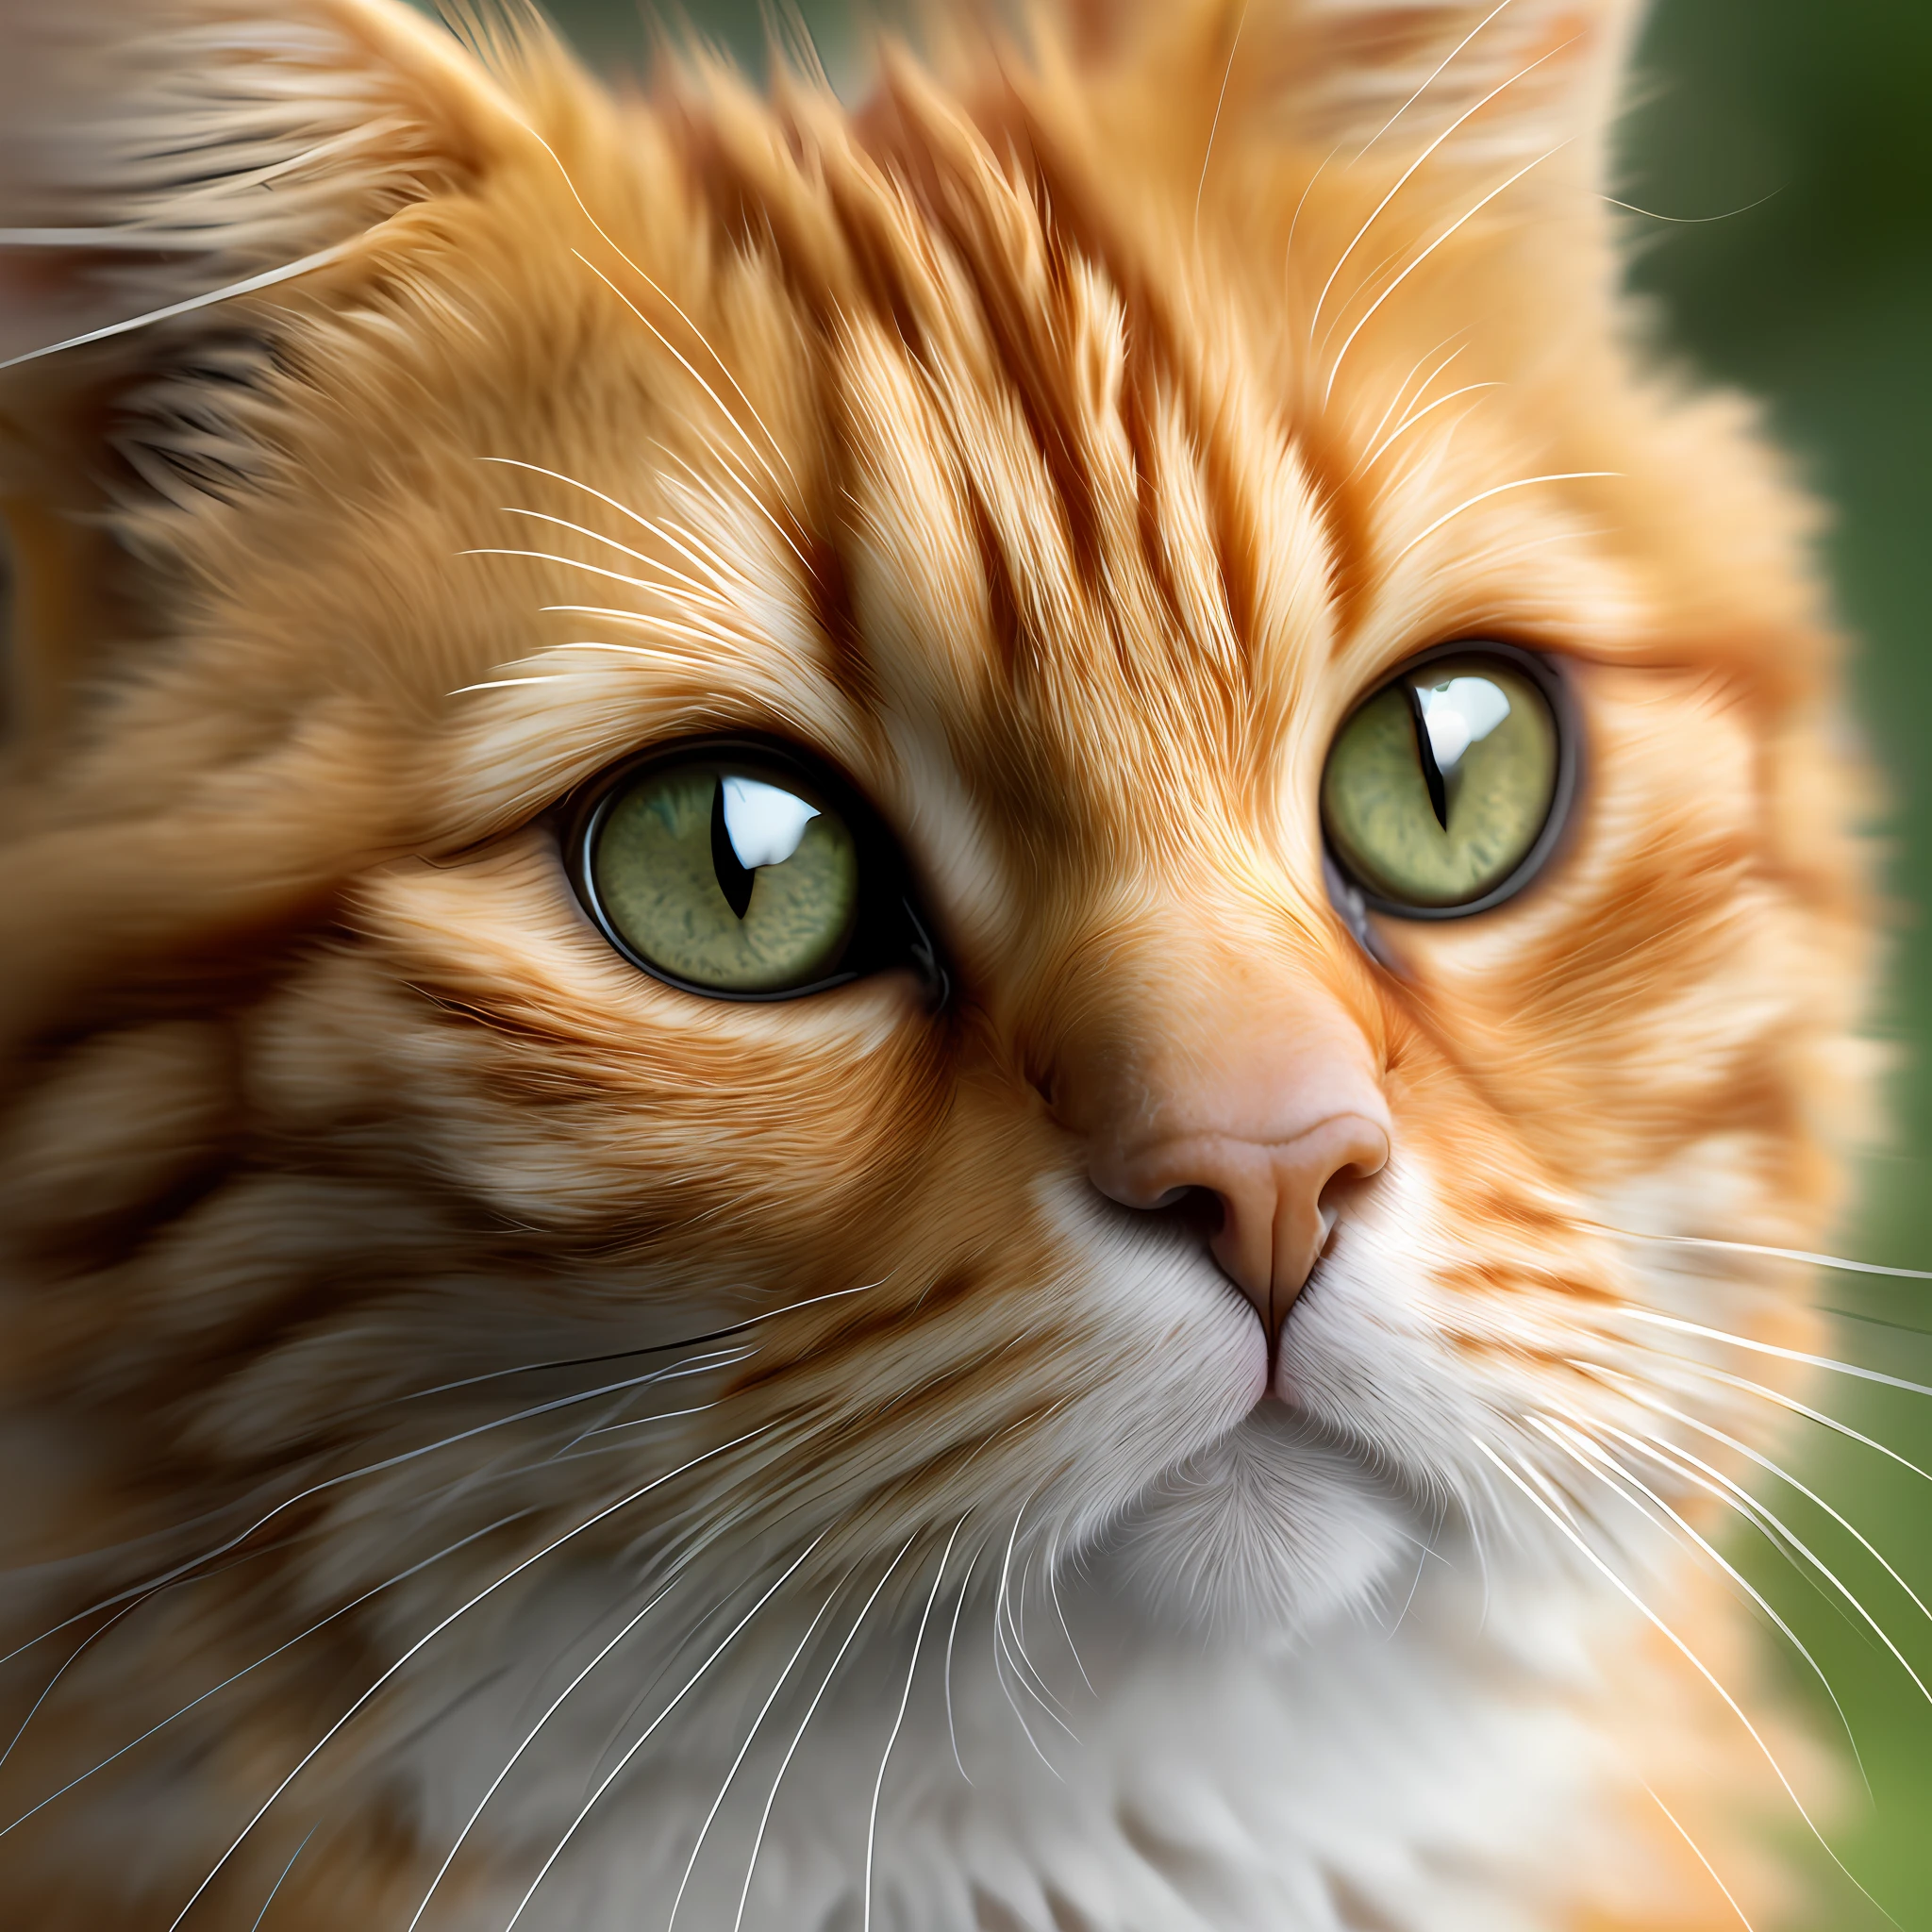 (極為細緻的CG統一8k壁紙,傑作, 最好的品質, 超詳細, 高解析度),(最佳照明, 最好的影子, 極其精緻美麗), 動態角度, 漂浮的, 高飽和度, 

[薑湯姆貓的照片, 細緻而美麗的綠色眼睛, 白色皮毛，帶有橙色斑點, 貓耳朵, 帶鈴鐺的領子, (好玩的:1.3), 可愛的表情, 長鬍鬚, 柔軟蓬鬆, 可愛的爪子, (玩具:1.2), 看著觀眾, 远射]:0.9